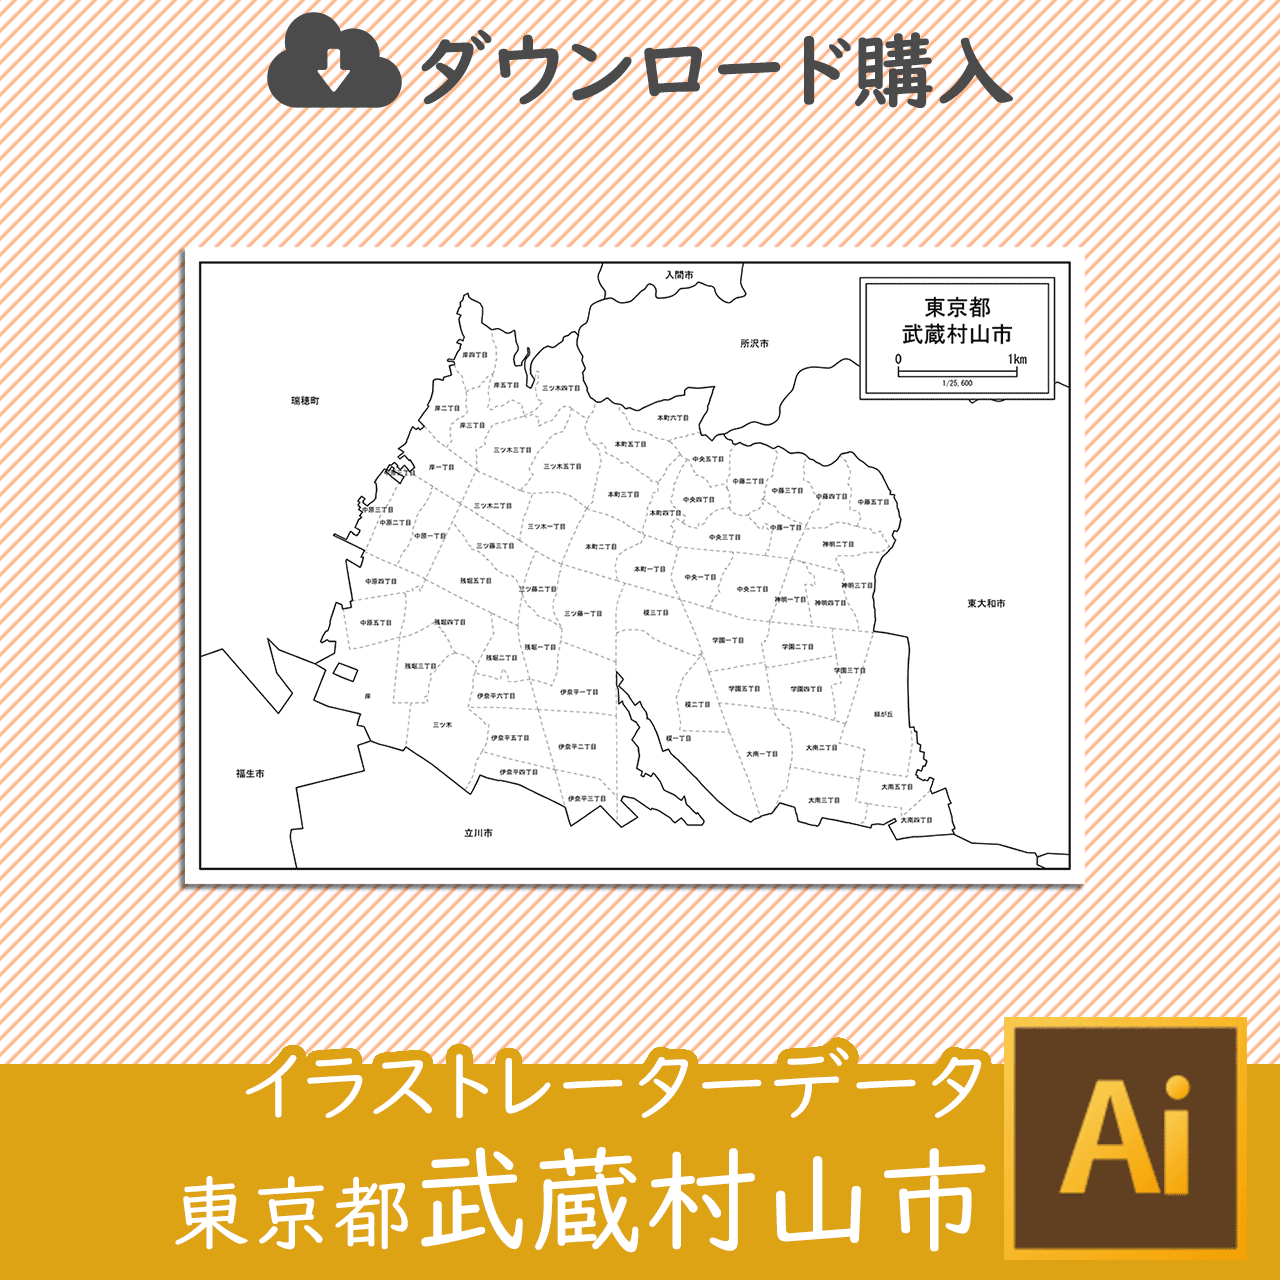 武蔵村山市のaiデータのサムネイル画像